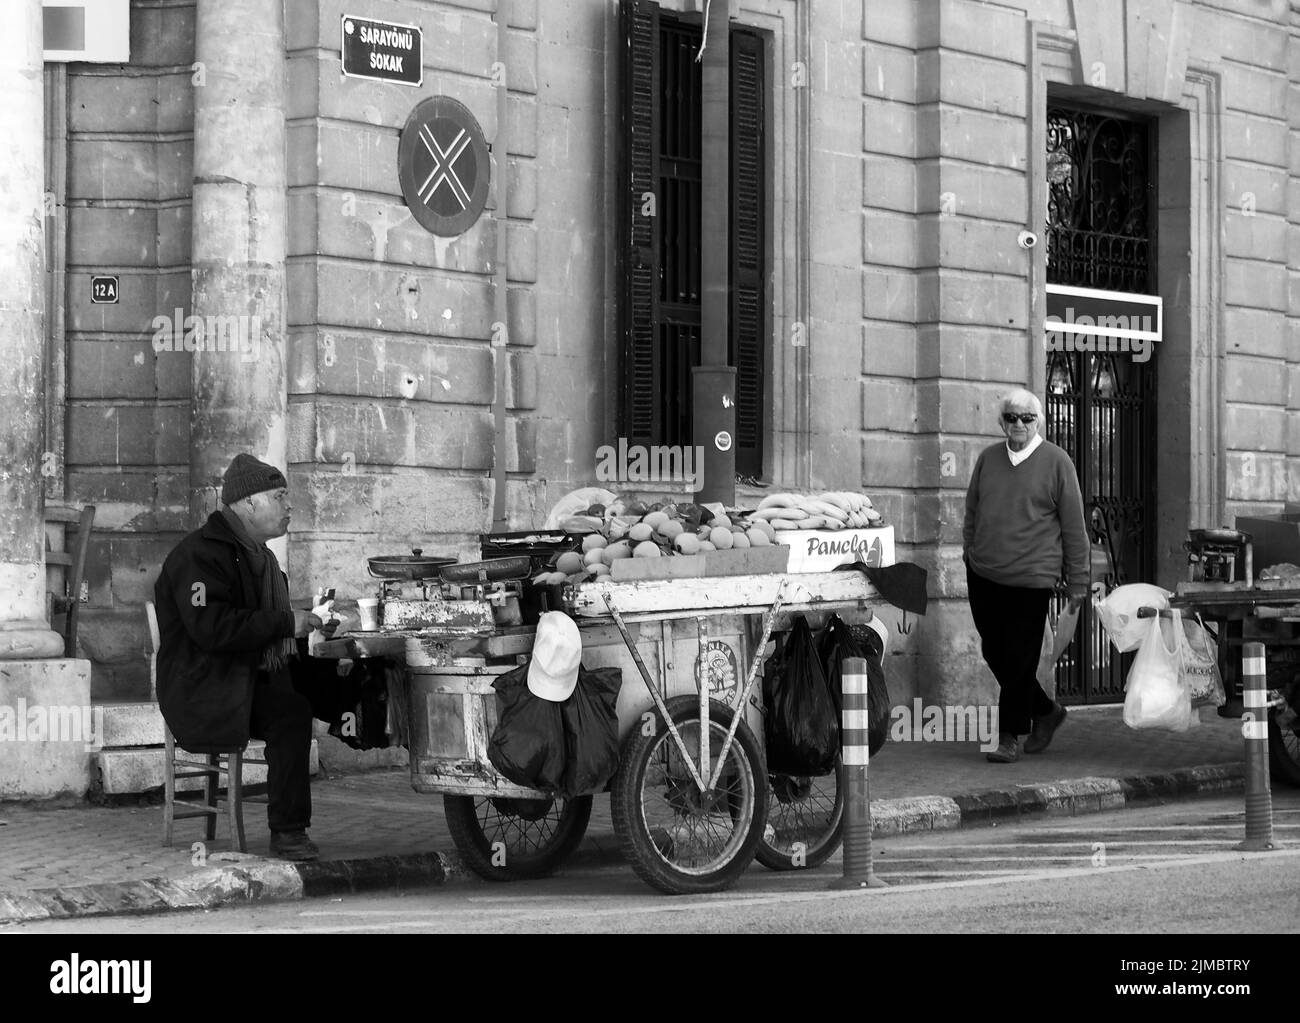 Un uomo che vende frutta da una stalla su un carrello si siede sul marciapiede a Nicosia Cipro su un angolo della strada Foto Stock